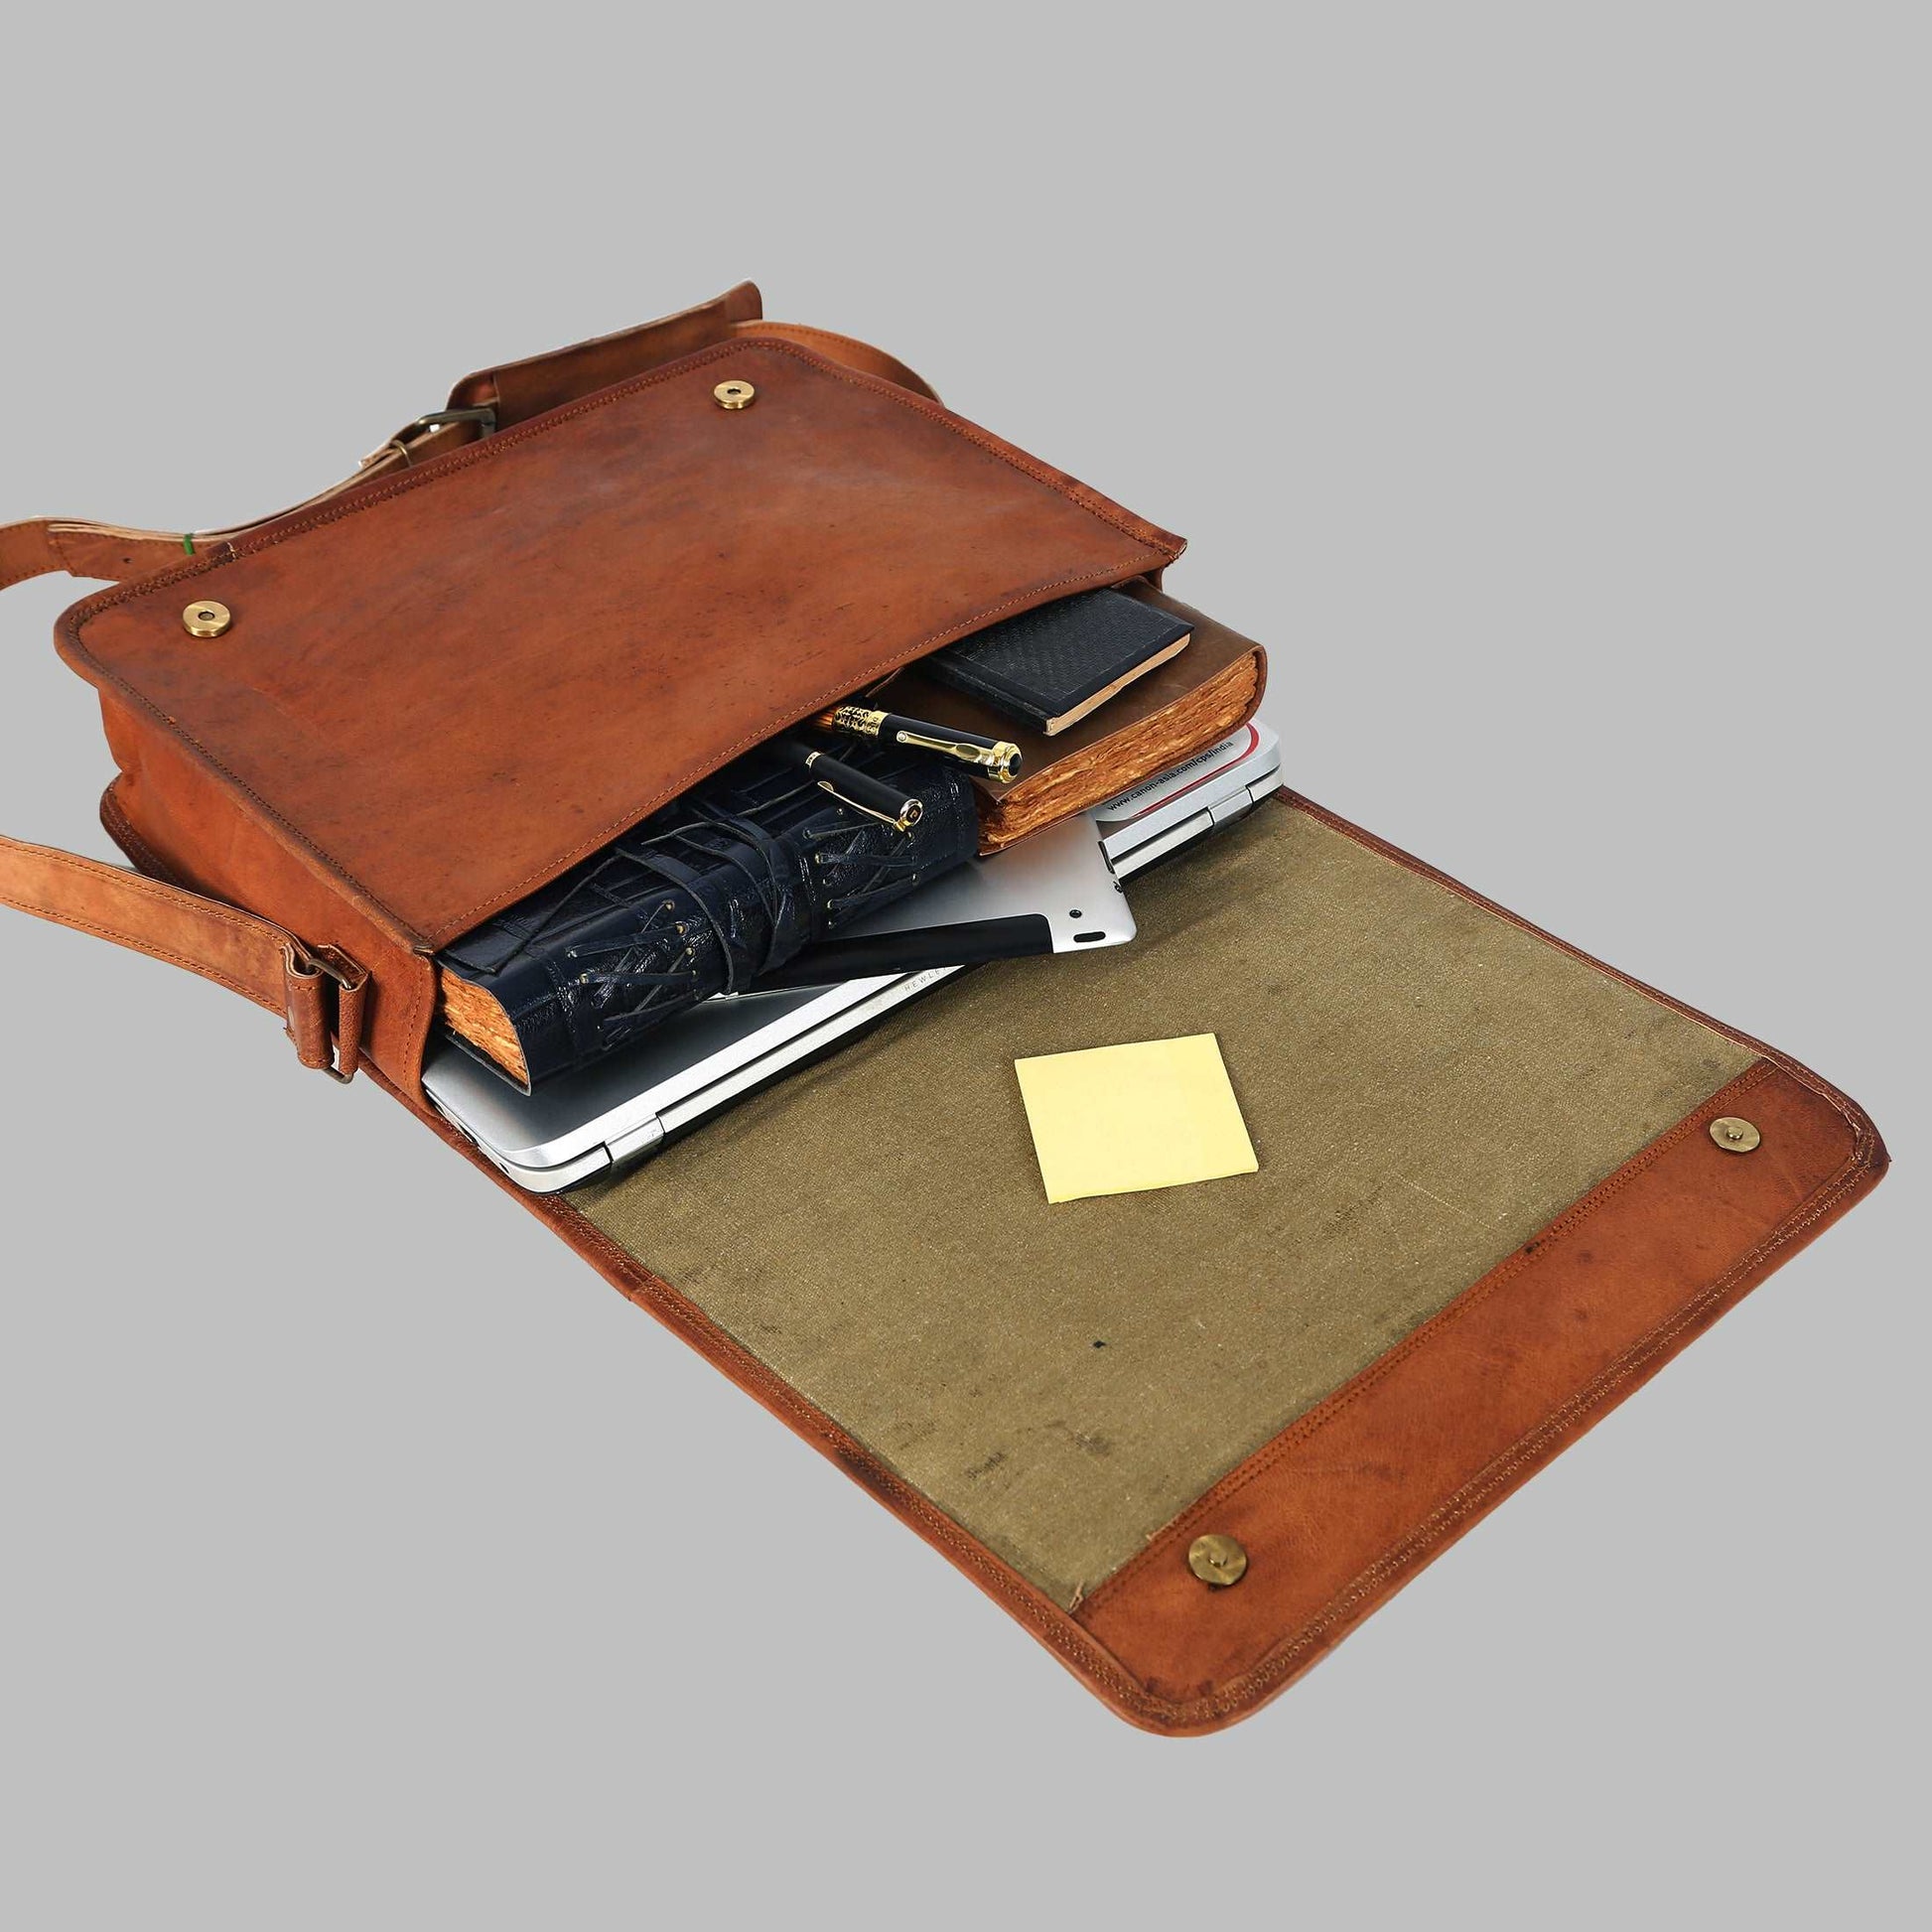 Vintage Crossbody Genuine Leather Laptop Messenger Bag Gifts for Him Her